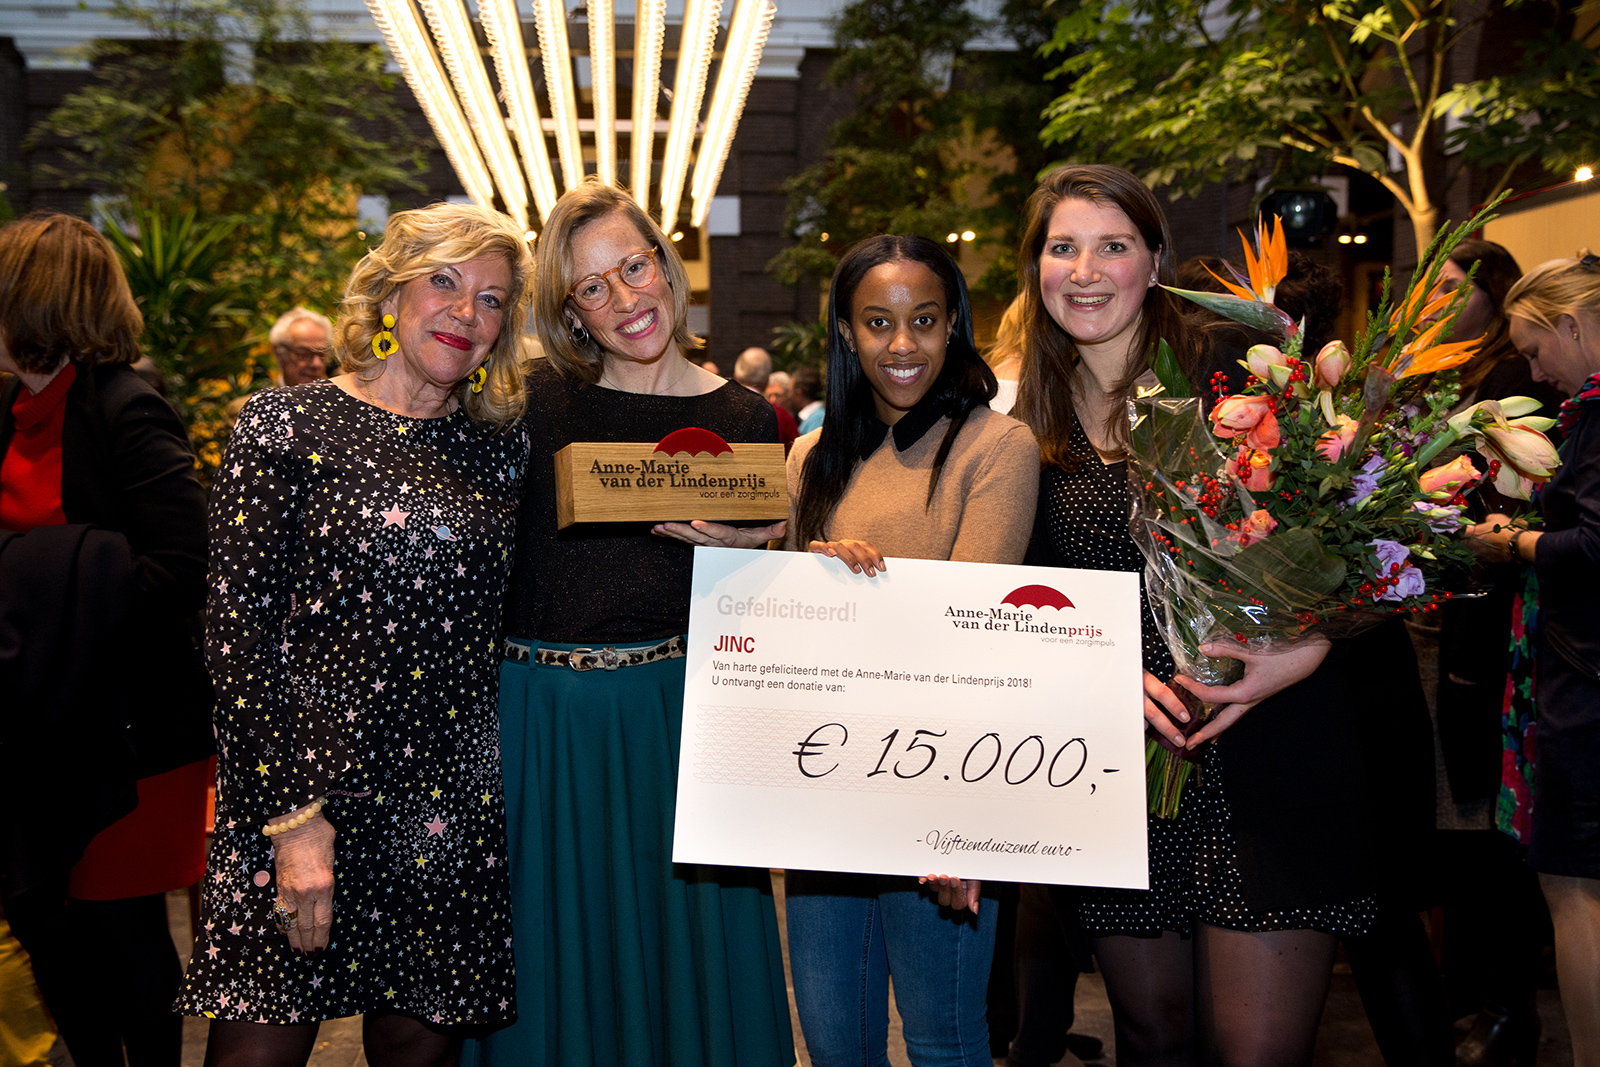 Met hun project 'Zorgimpuls' is JINC uit Rotterdam op 13 december 2018 de gelukkige winnaar geworden van de Anne-Marie van der Lindenprijs 2018